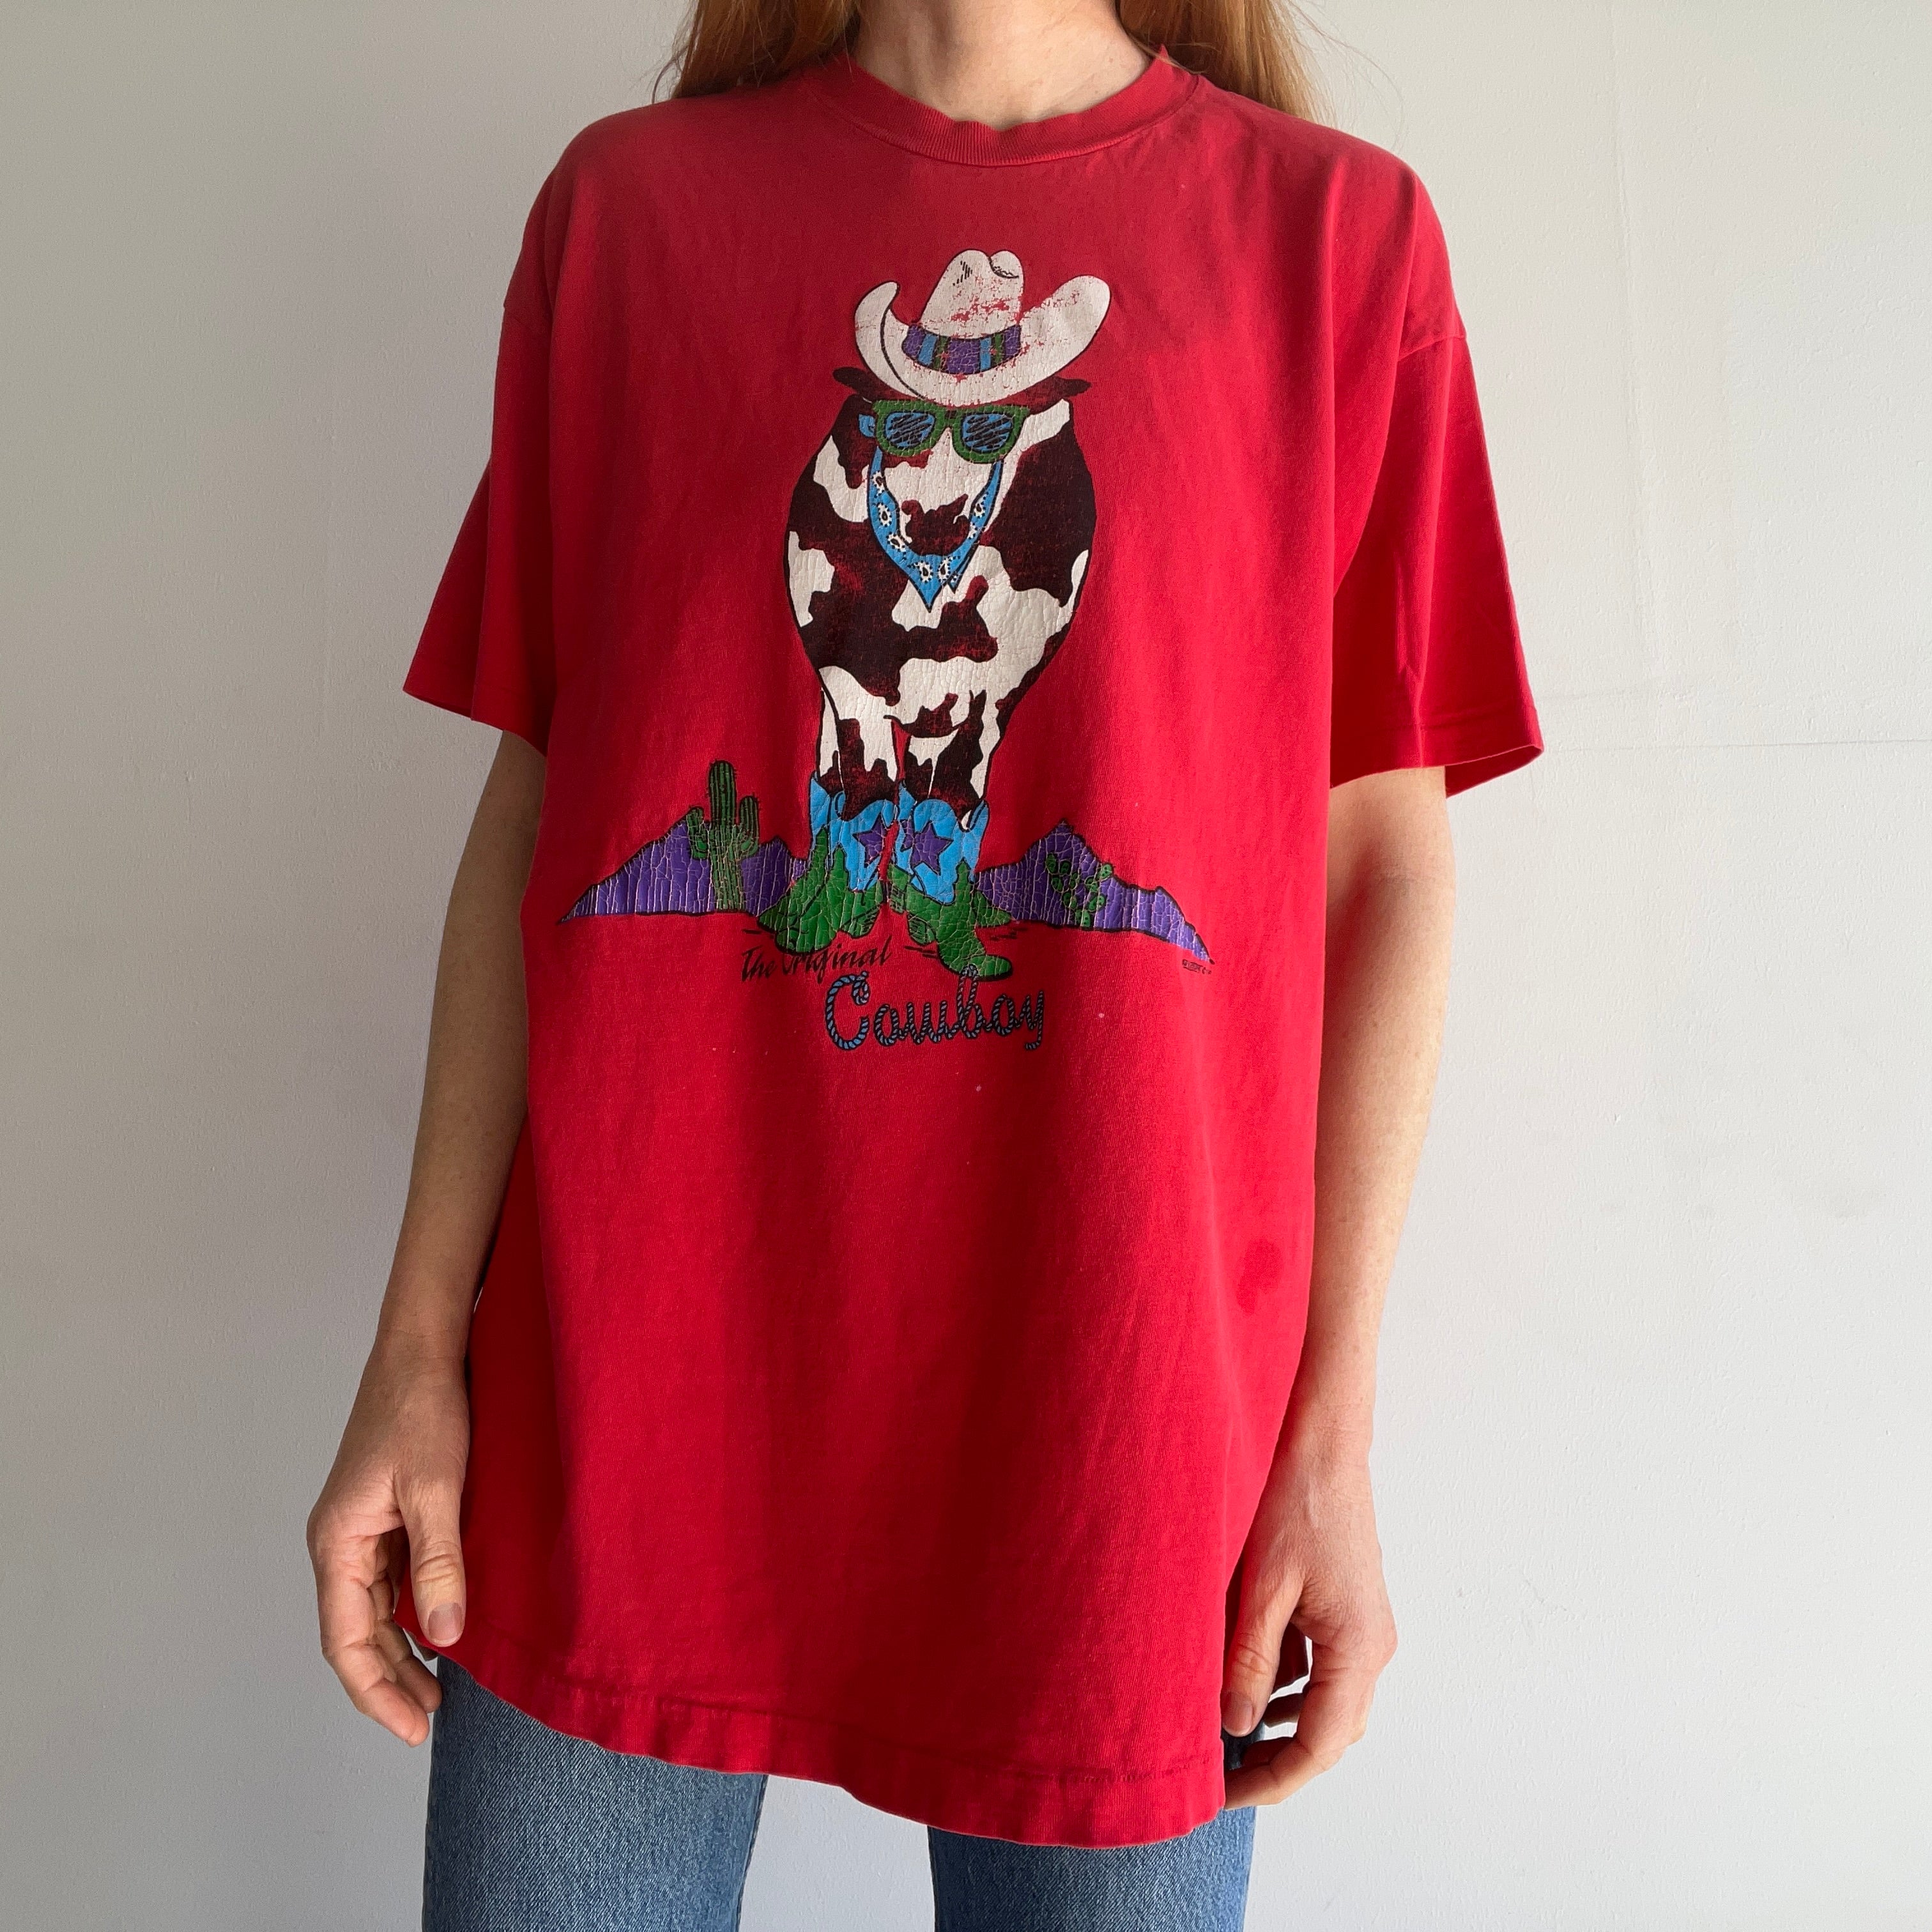 T-shirt Cowboy au sens propre et figuré 1991